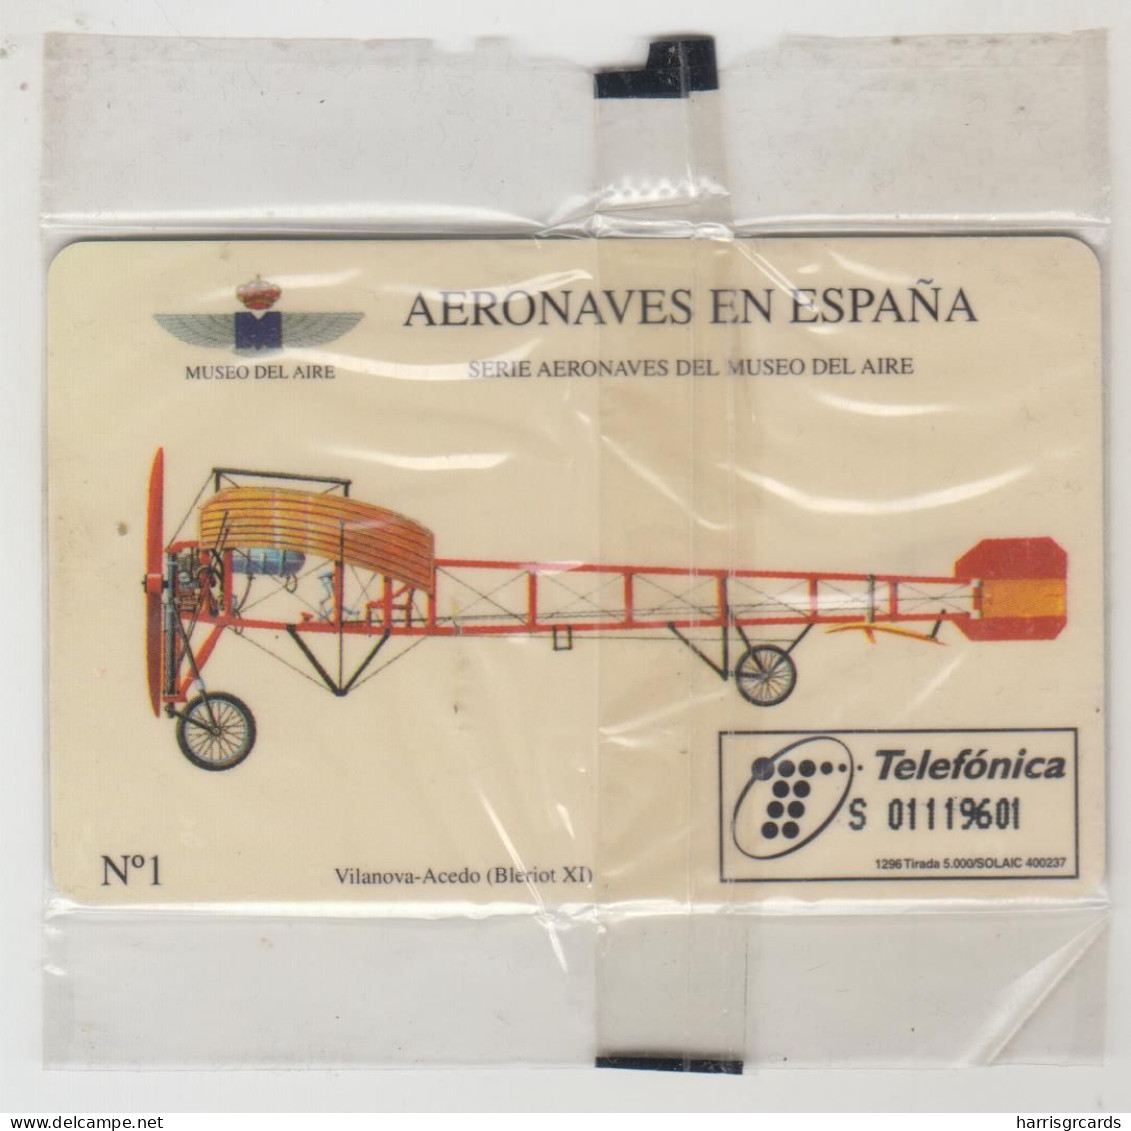 SPAIN - Aeronaves De España N.1 (Plane), P-235, 12/96, Tirage 5.000, Mint - Emissions Privées